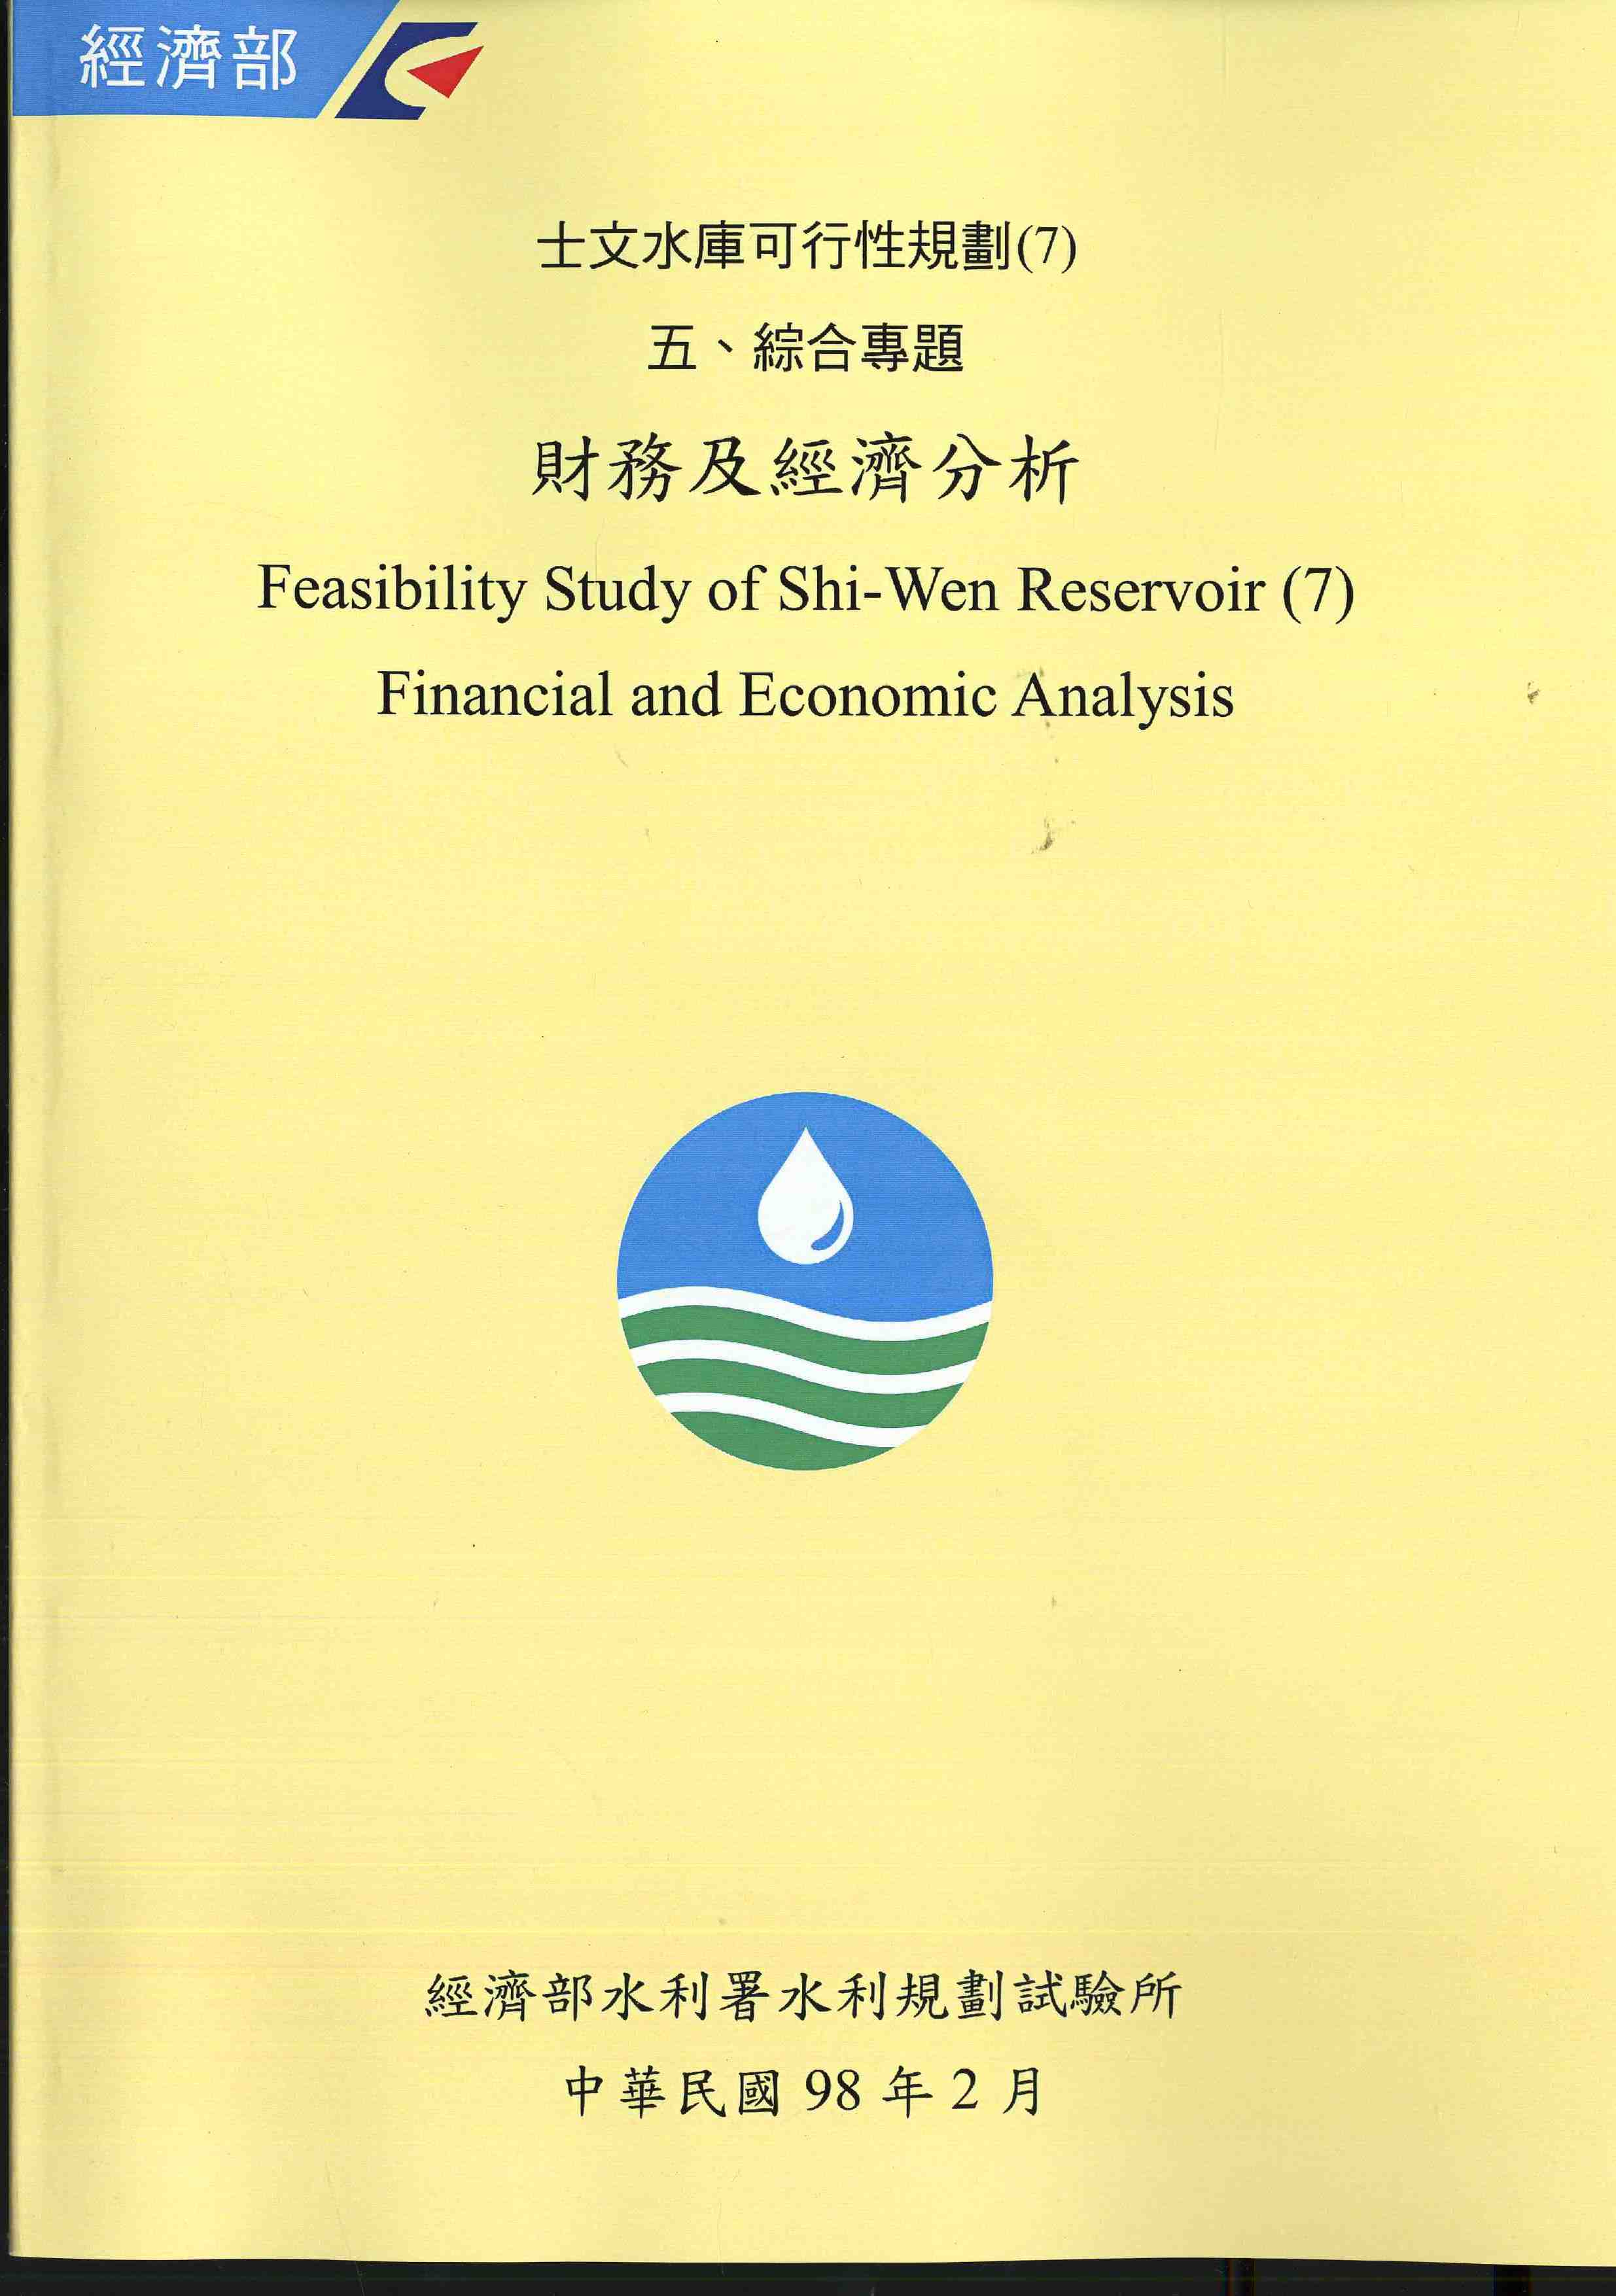 士文水庫可行性規劃(7) 五、綜合專題  財務及經濟分析